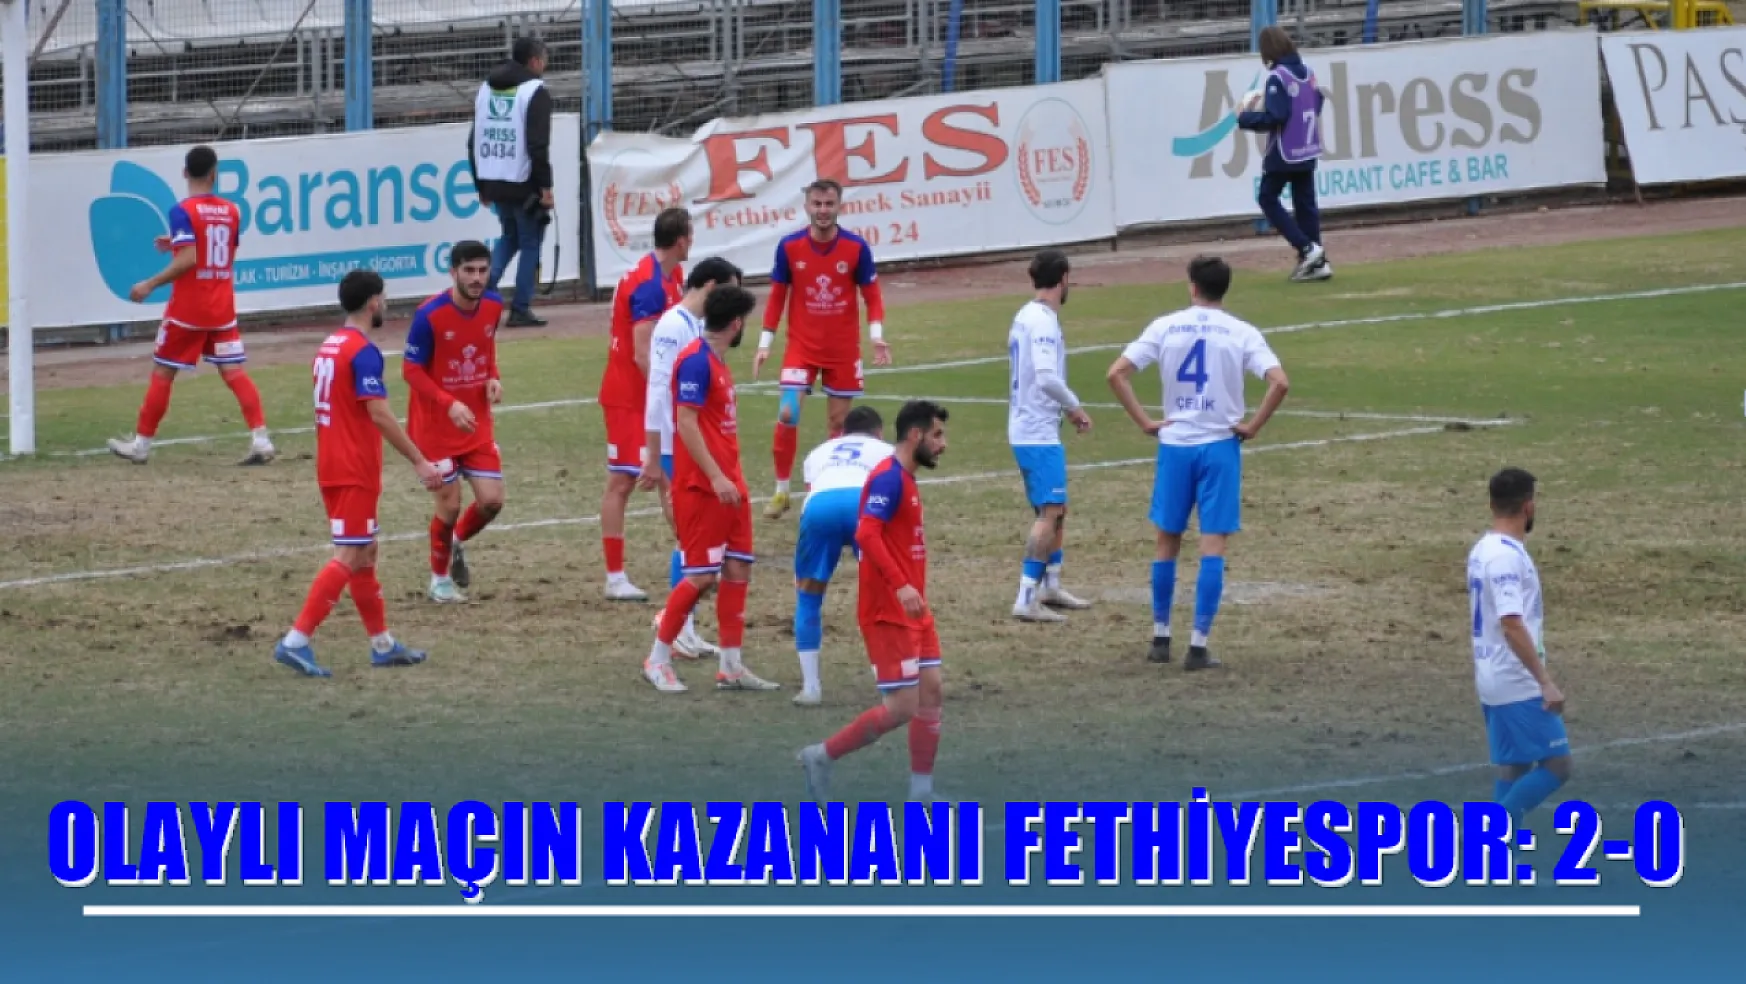 Olaylı maçın kazananı Fethiyespor: 2-0